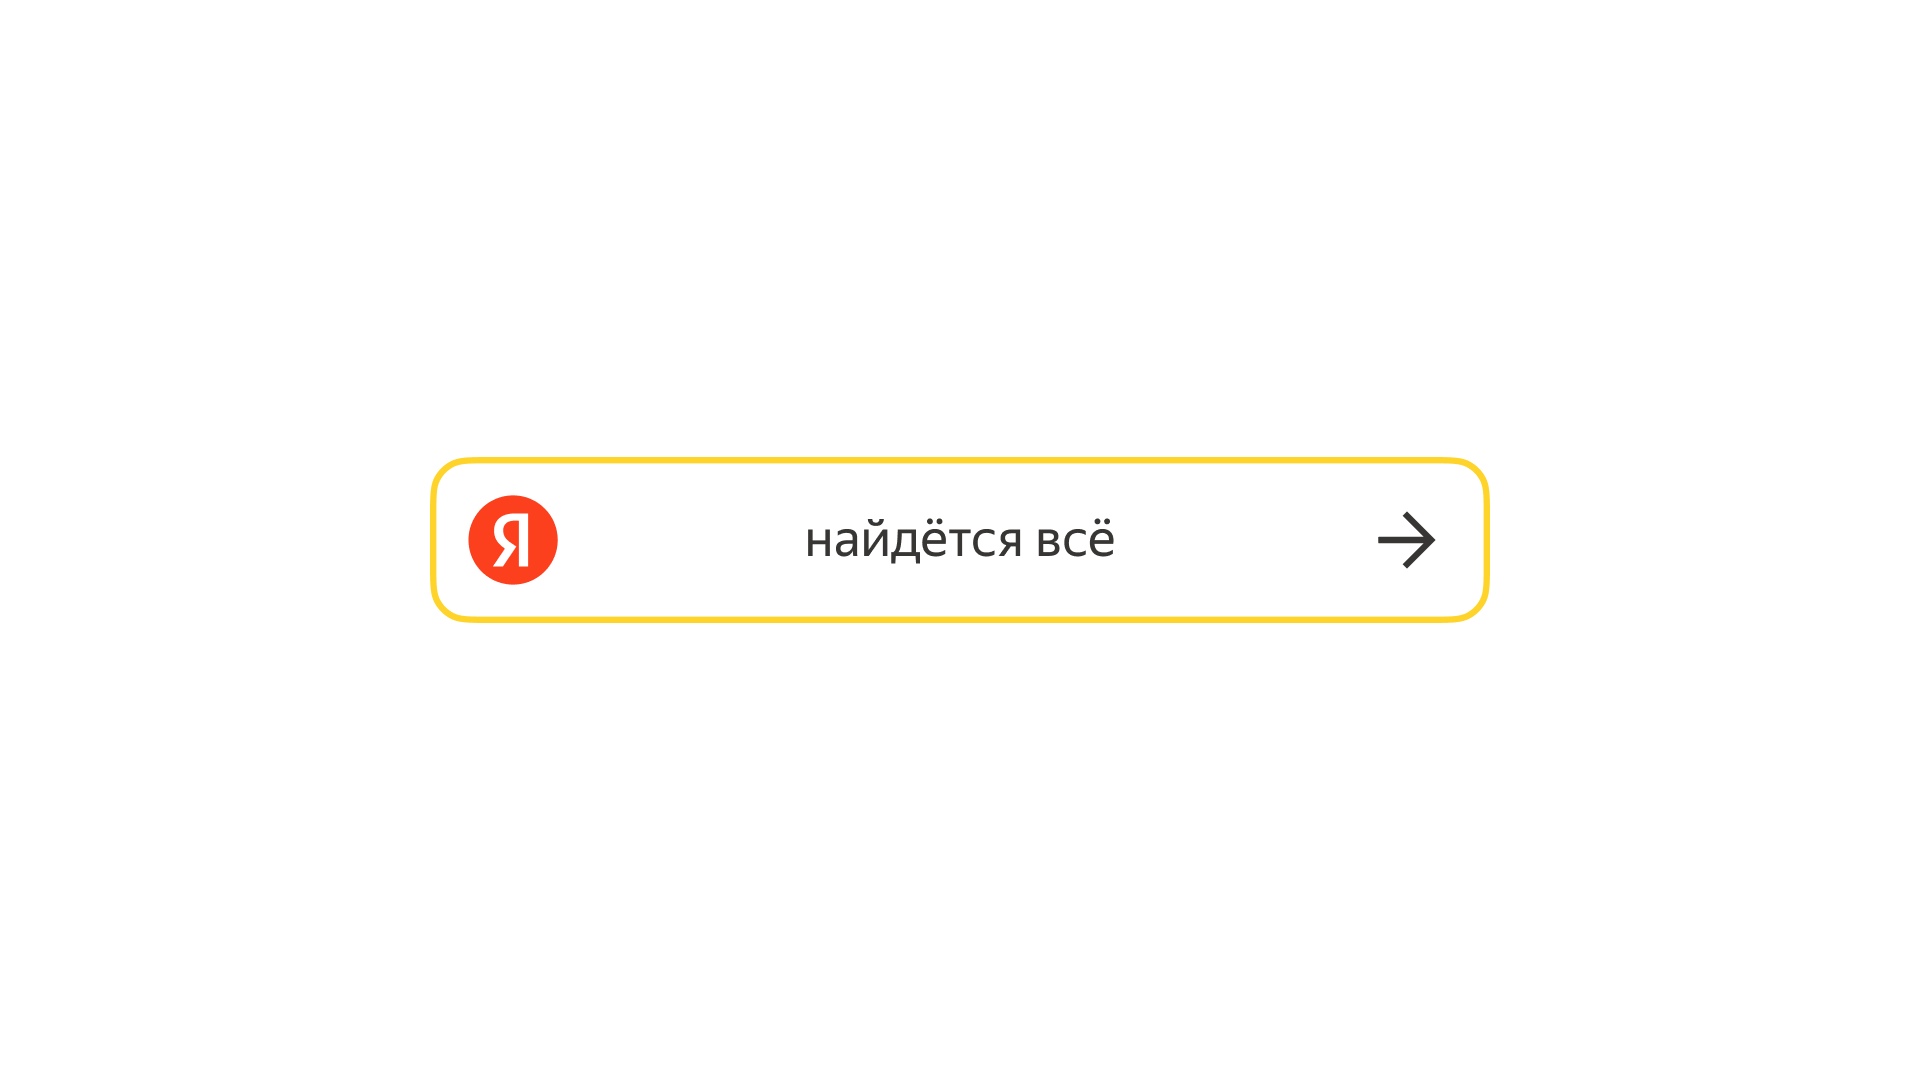 Поисковая строка яндекса картинка. Новый логотип Яндекса. Поисковая строка Яндекса.